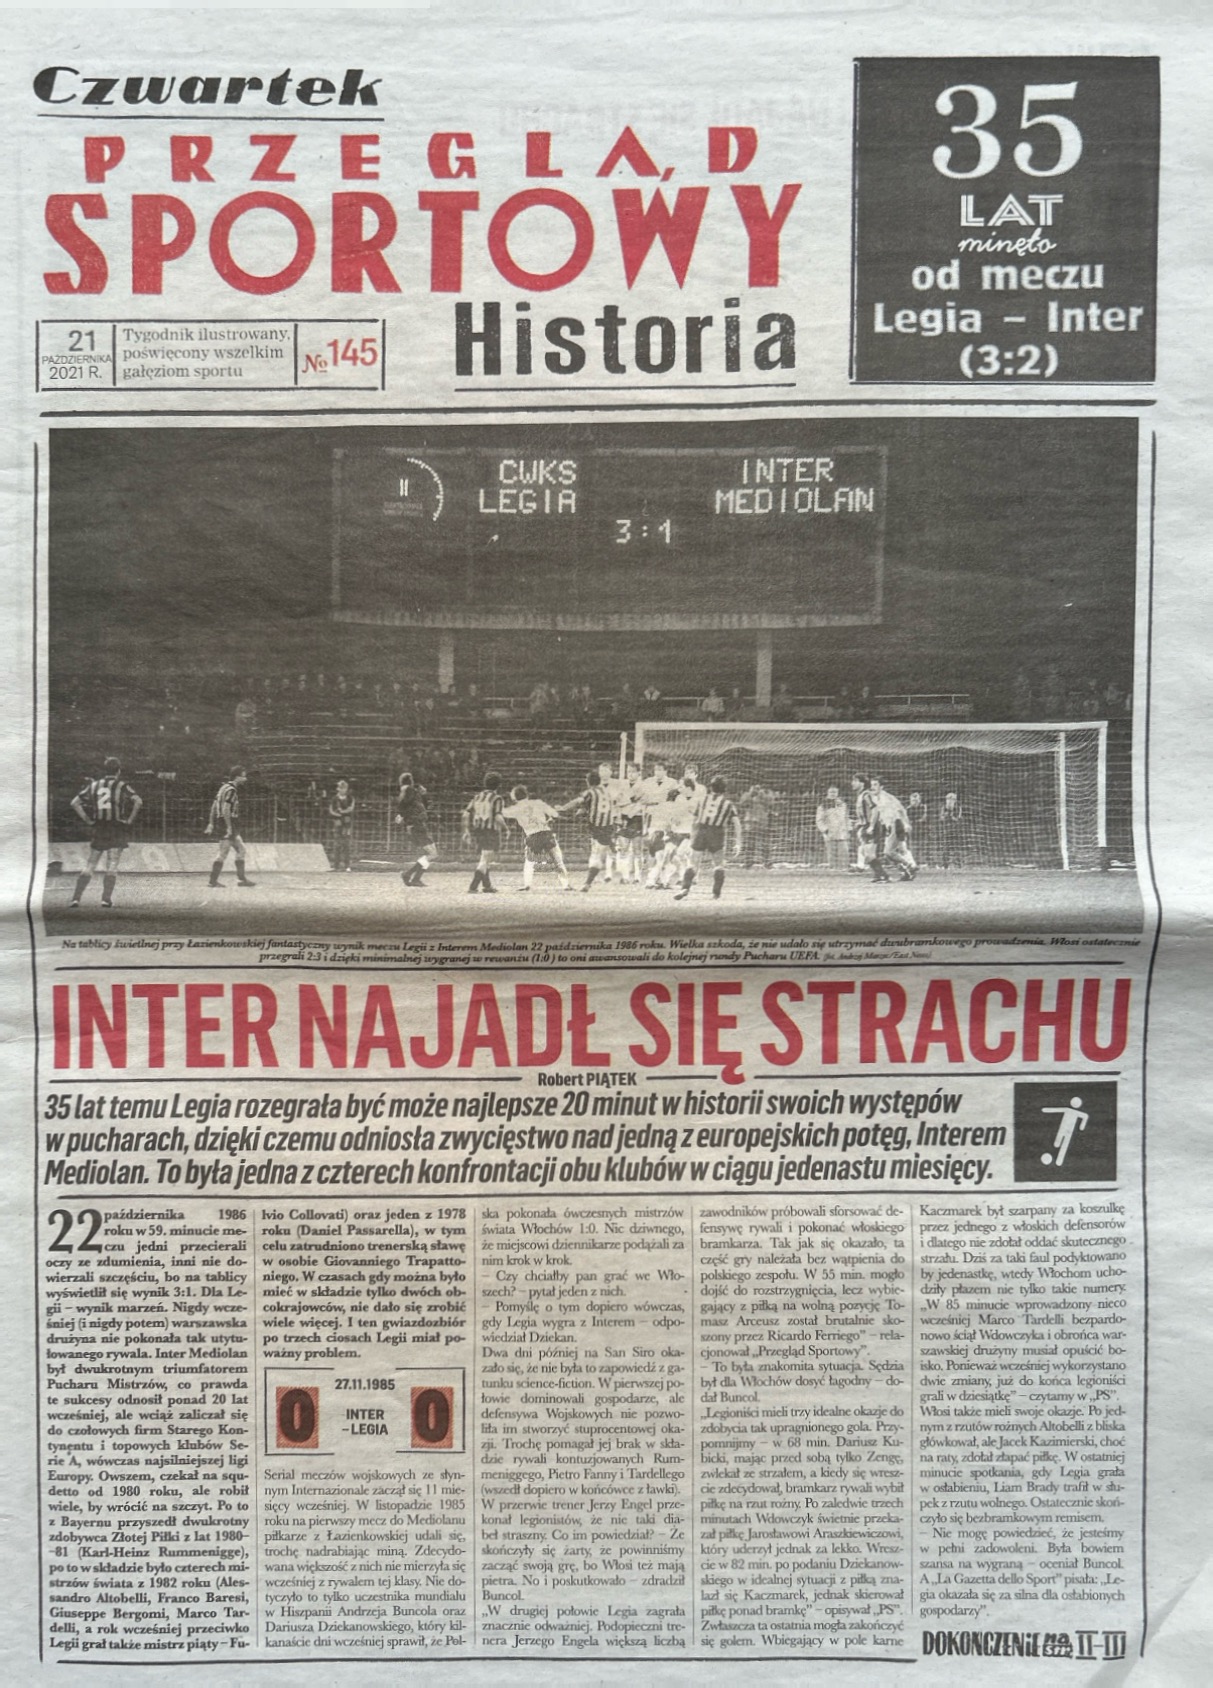 Przegląd Sportowy Historia o meczach Legia Warszawa - Inter Mediolan z 1985-1986